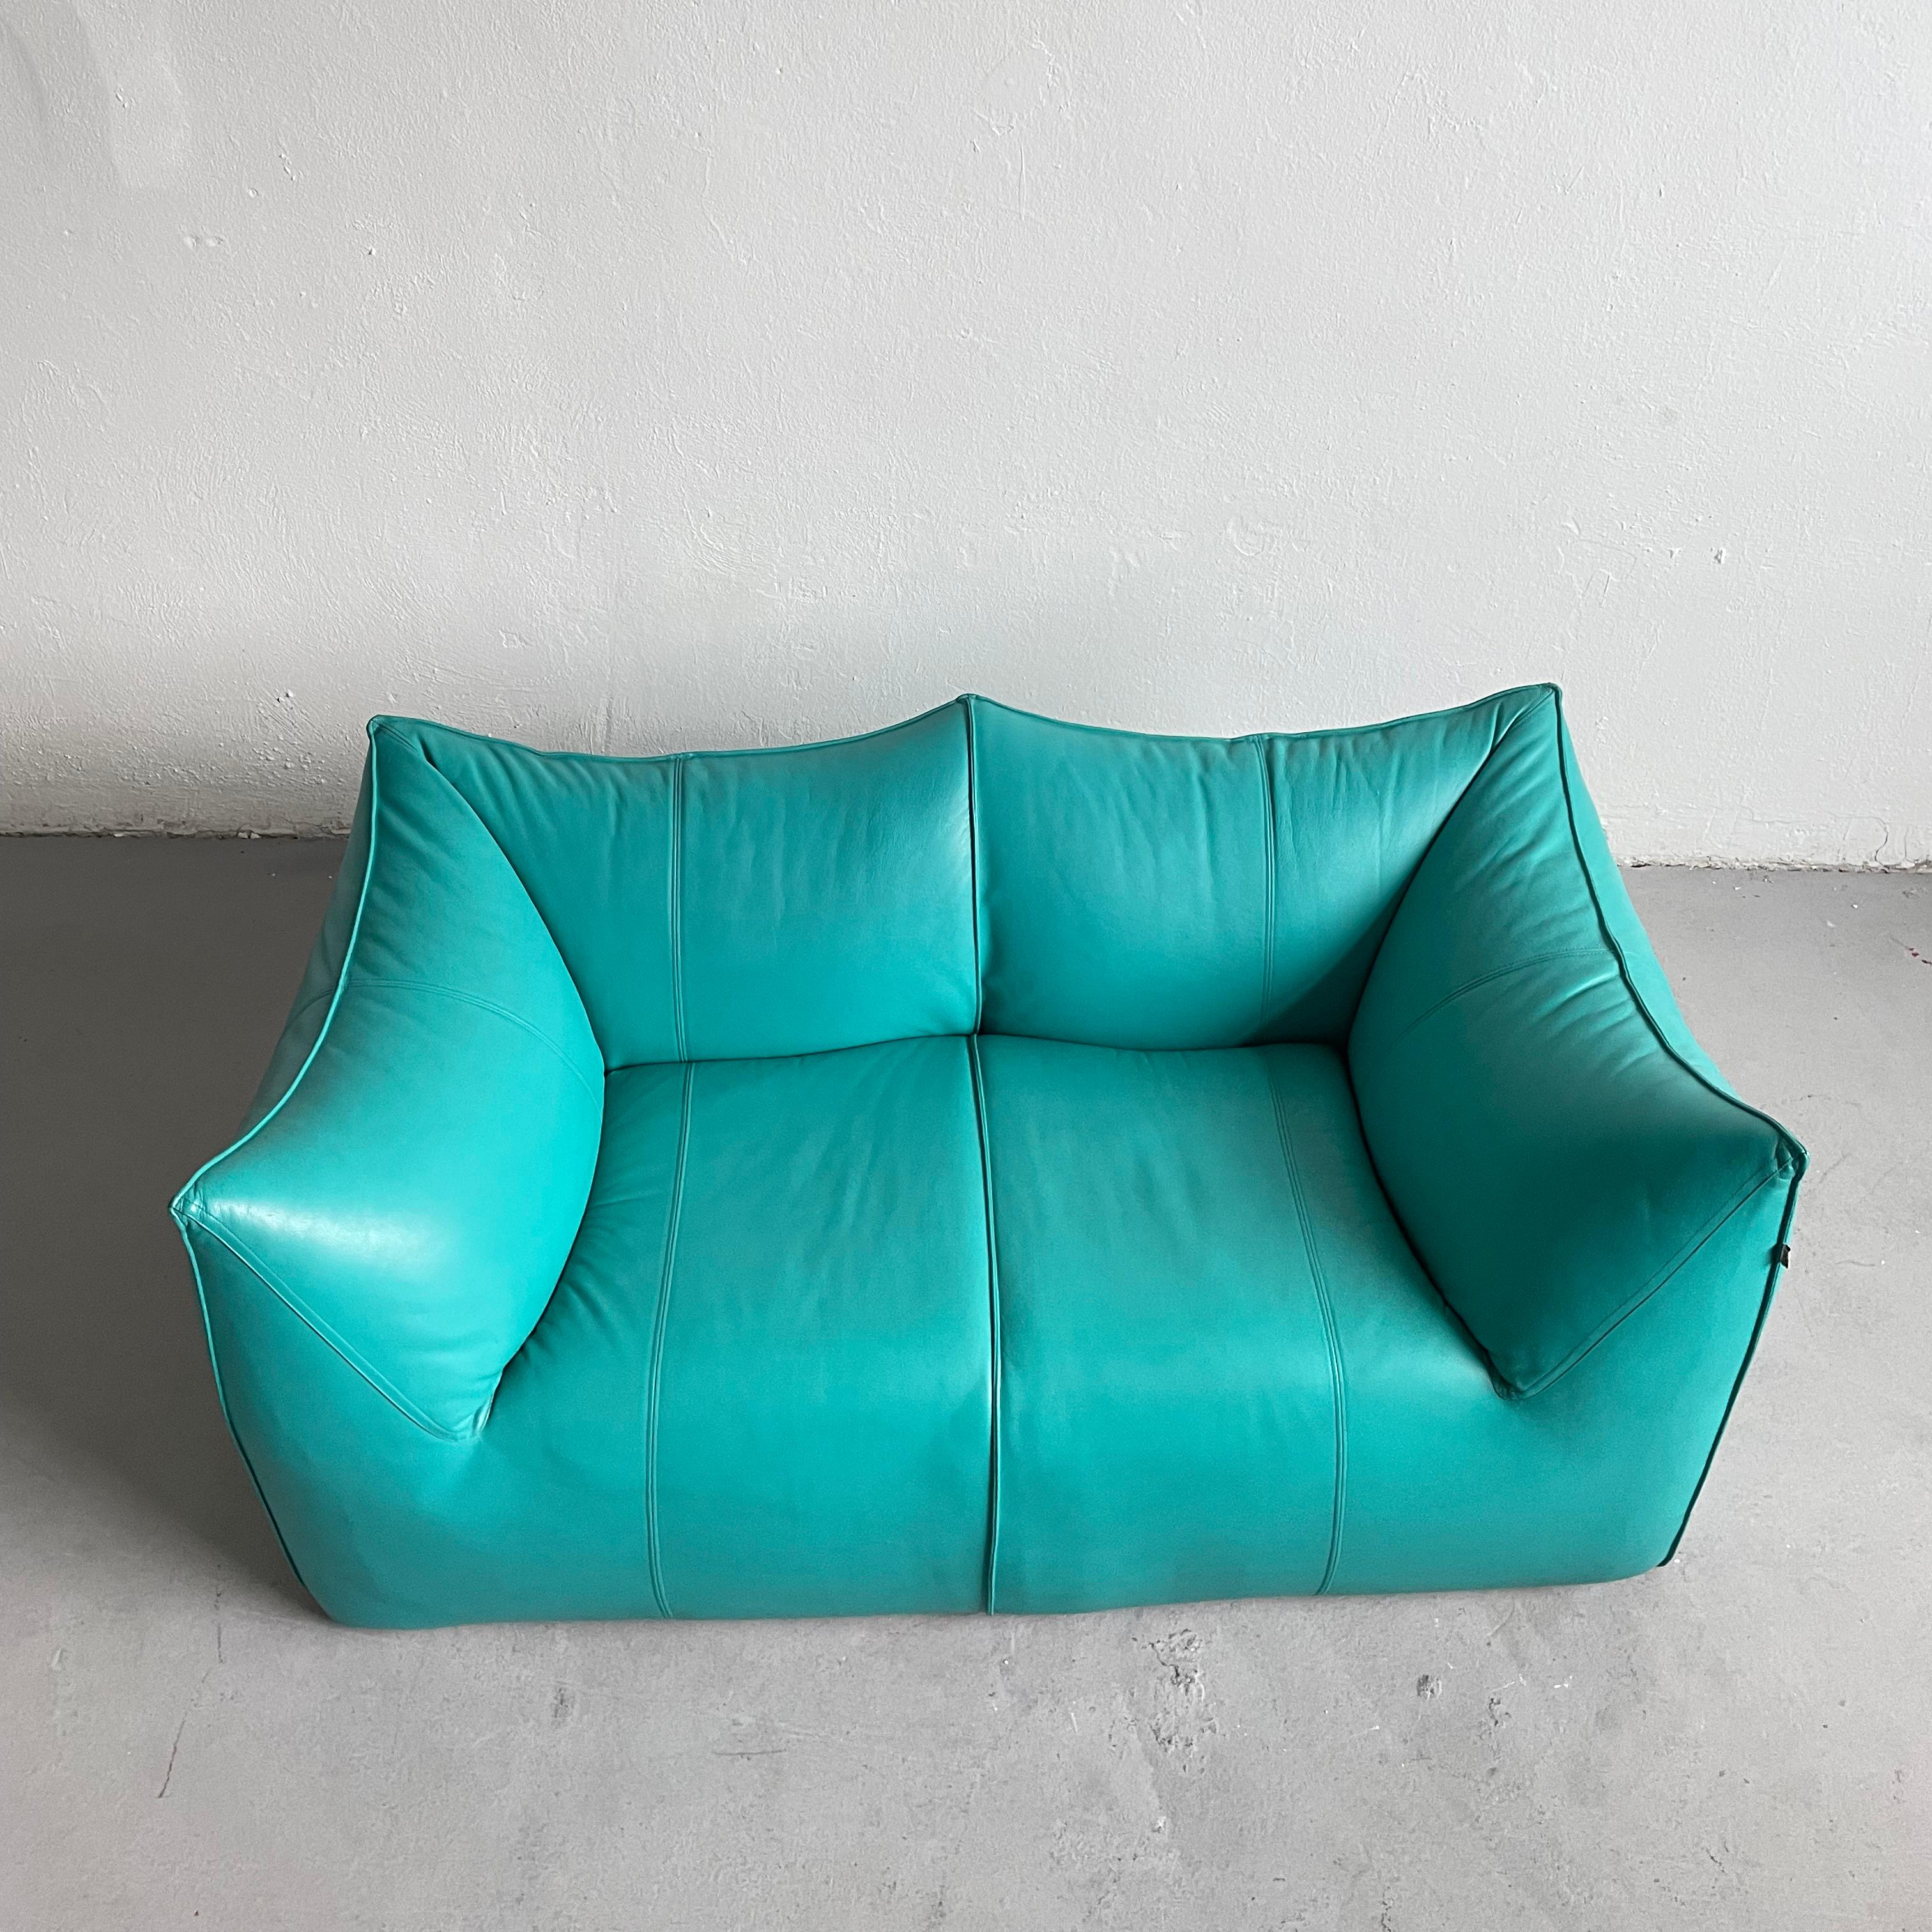 Le Bambole 2-Seater Sofa in Turquoise Leather, Mario Bellini for B&B Italia 70s For Sale 3